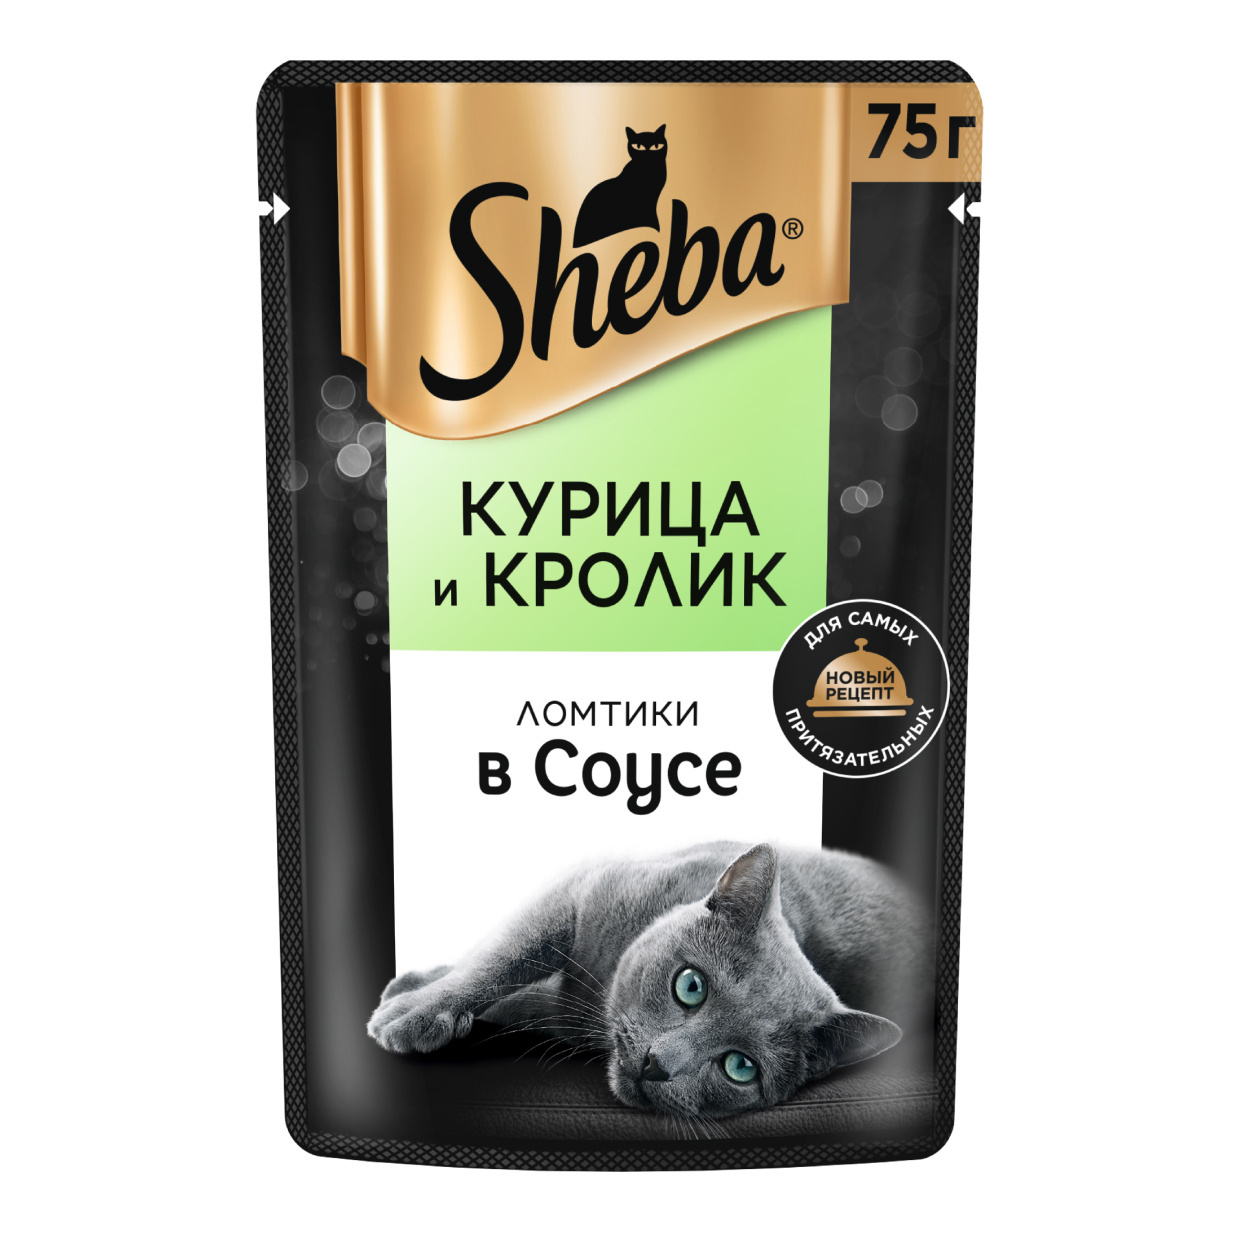 Sheba влажный корм для кошек «Ломтики в соусе с курицей и кроликом» (75 г)